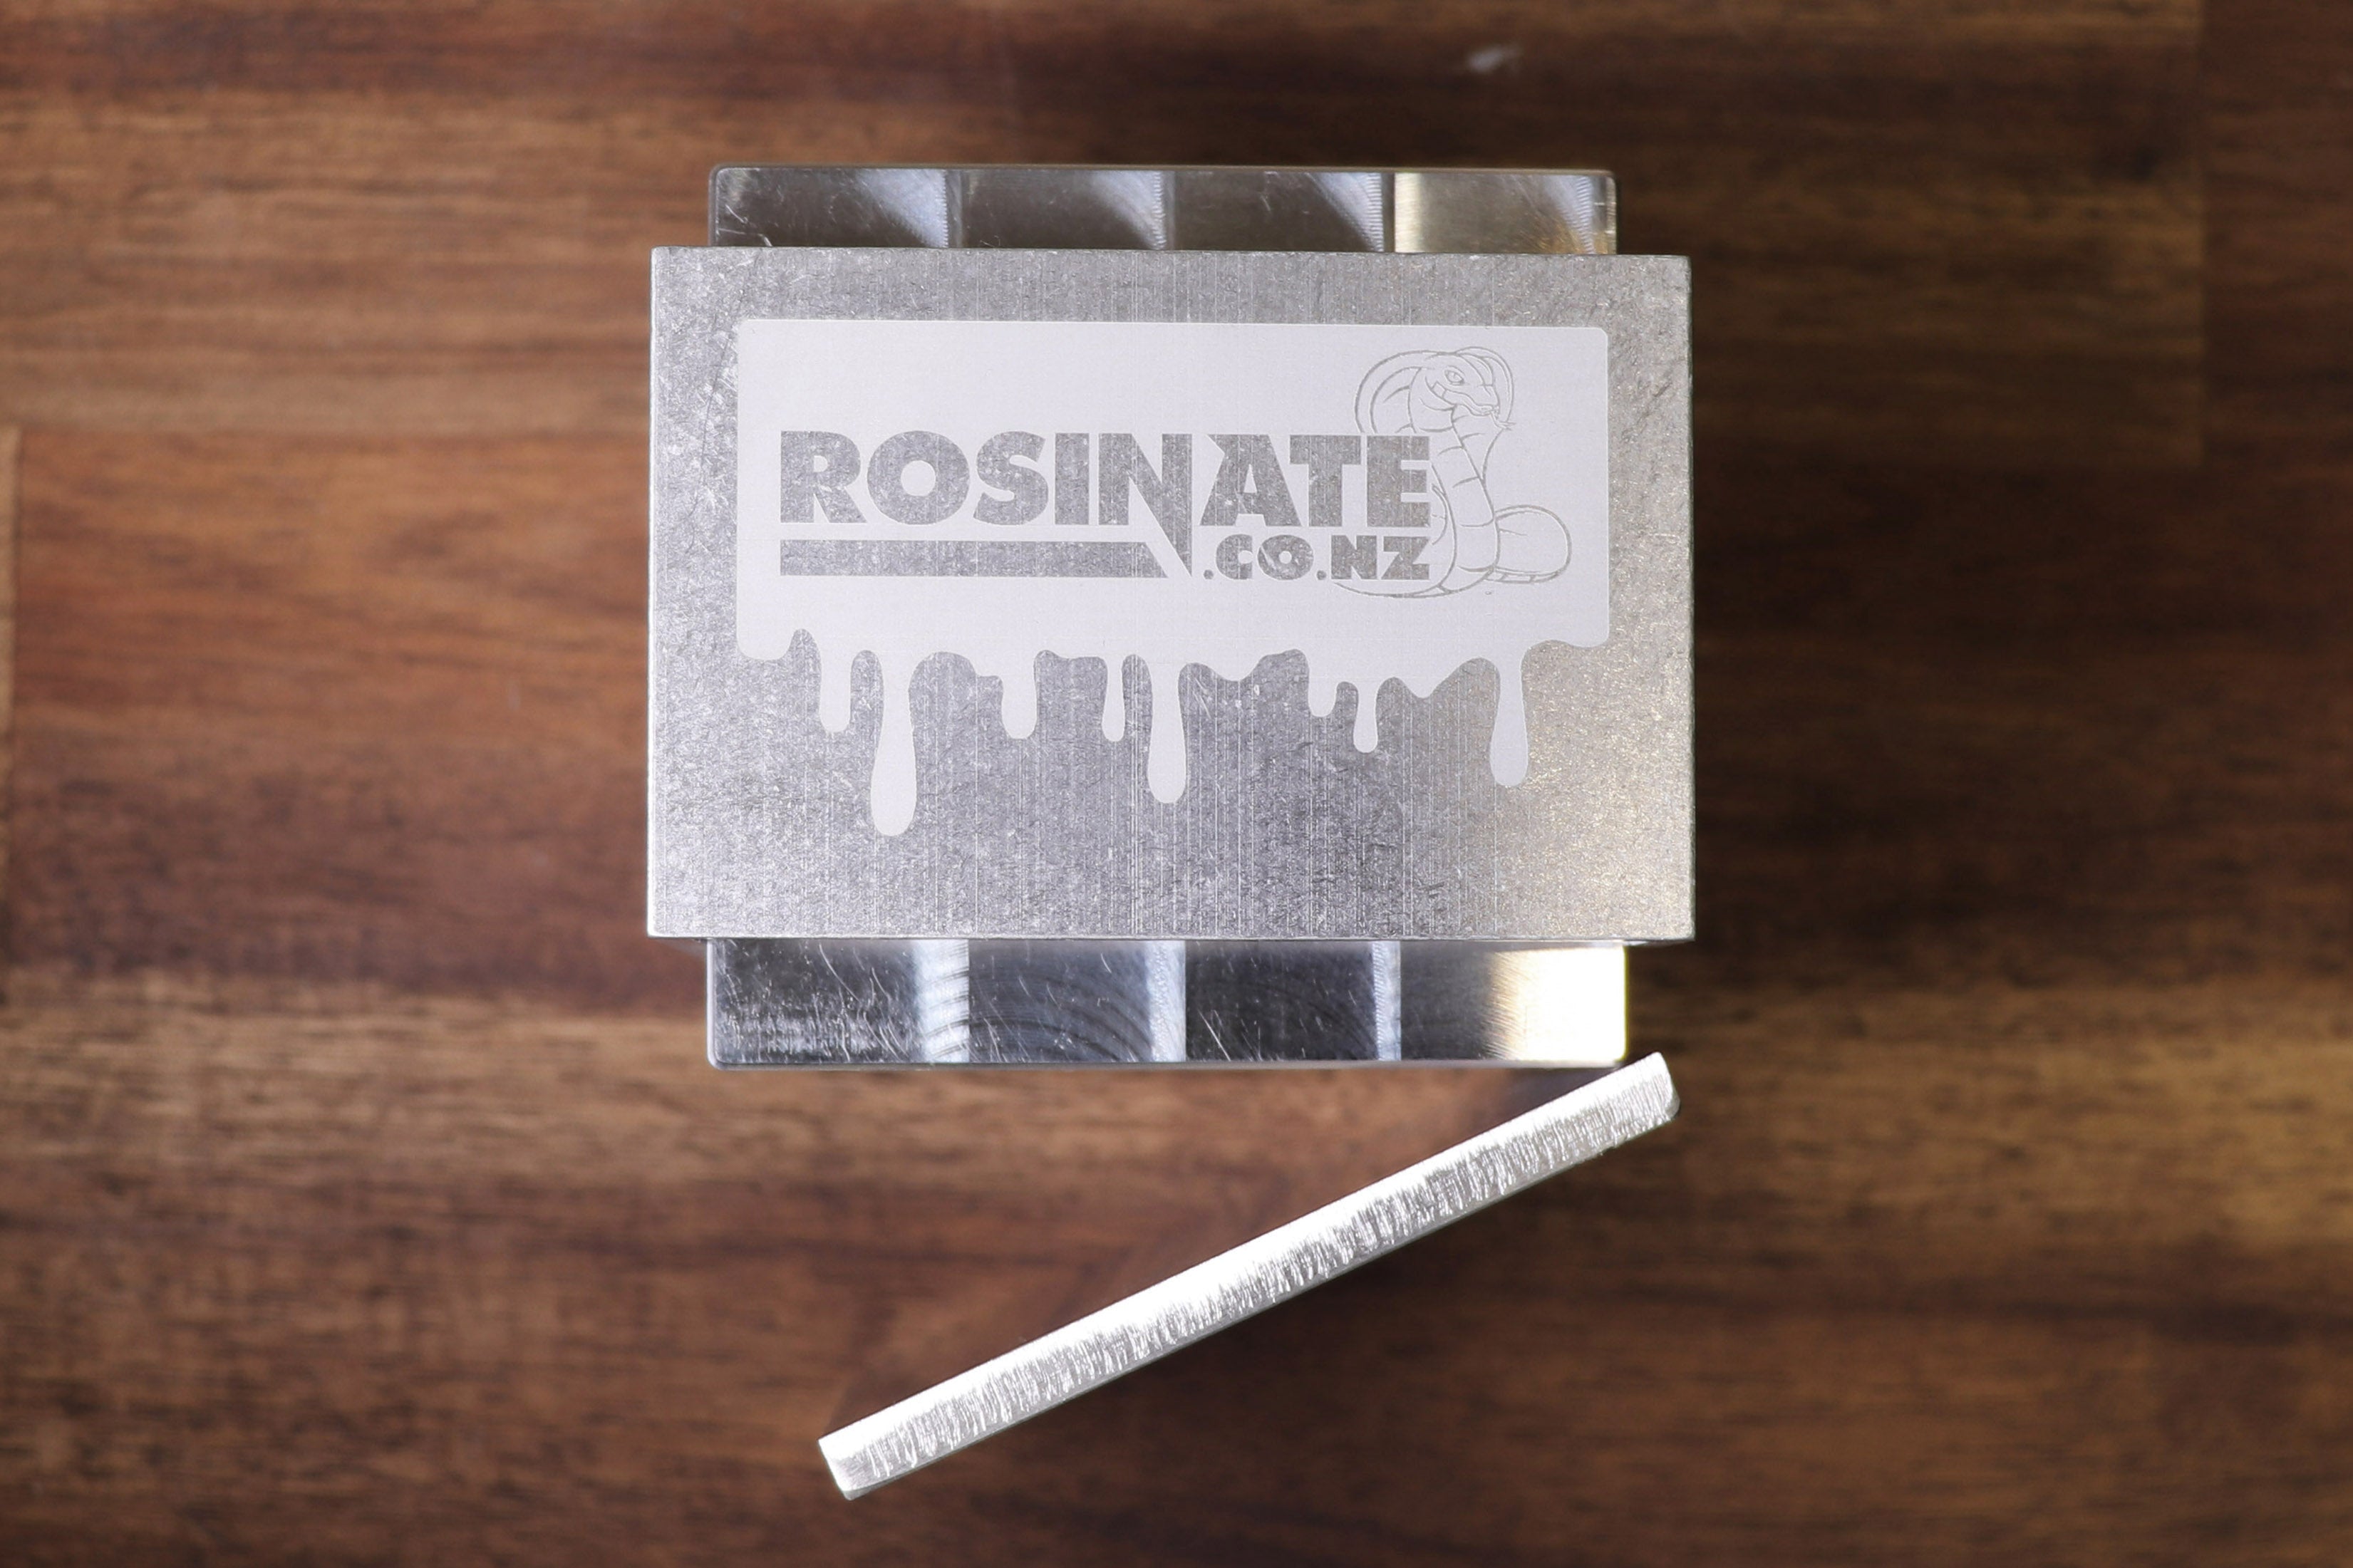 Pre-press for Rosinator 4" Plates (71mm square)